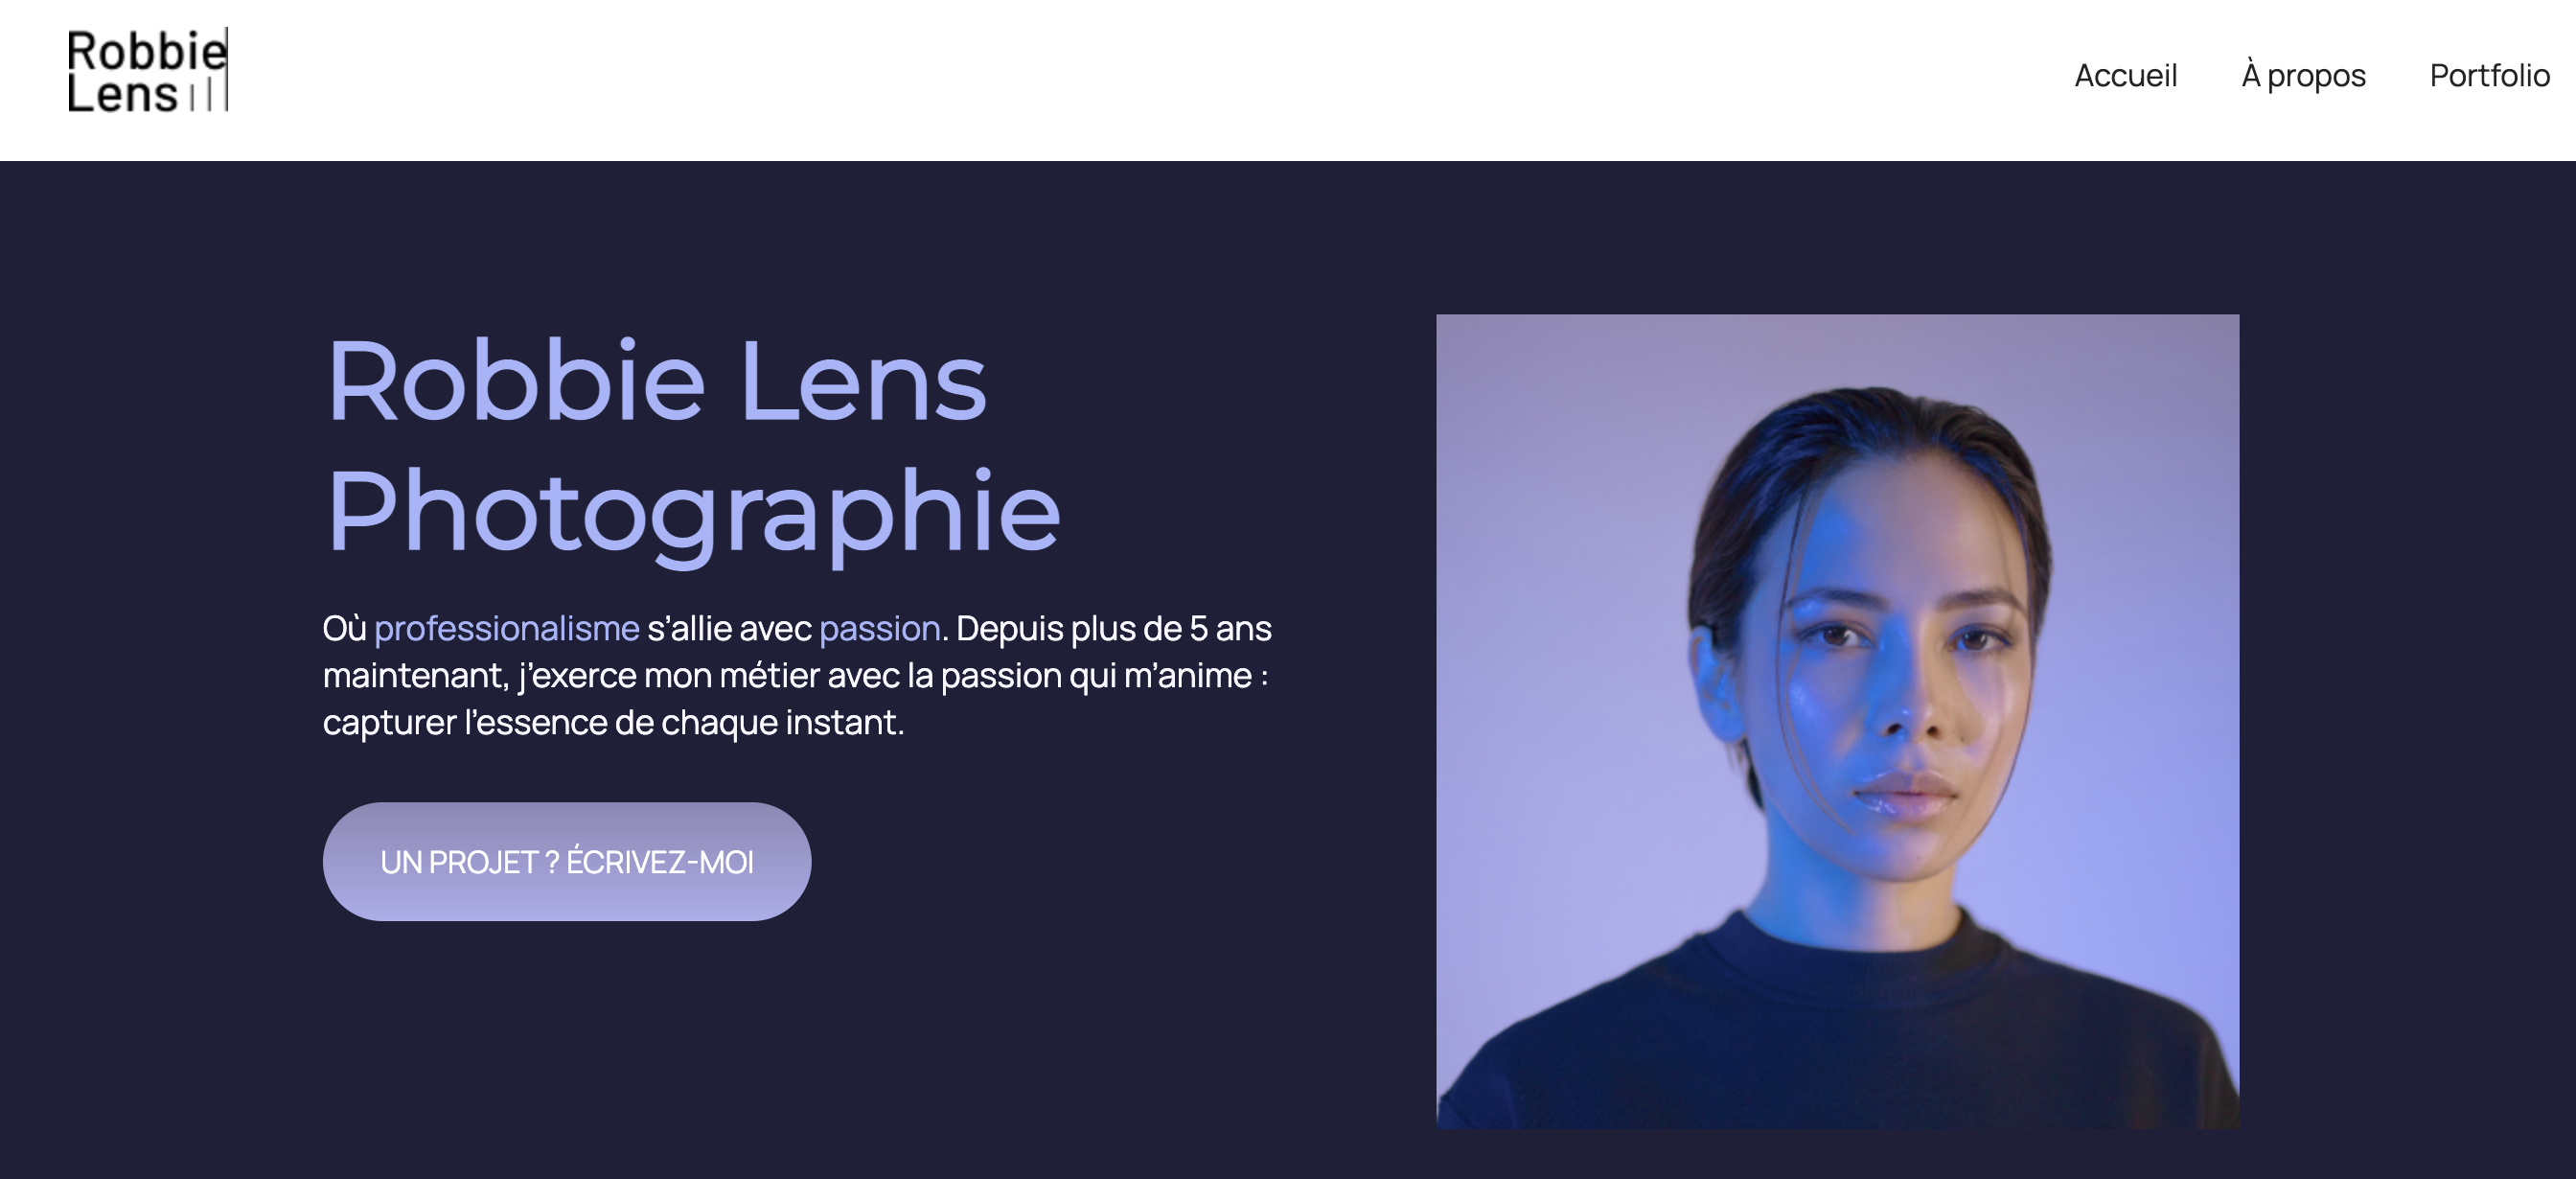 Une capture d'écran du site web de présentation photographique de Robbie Lens.